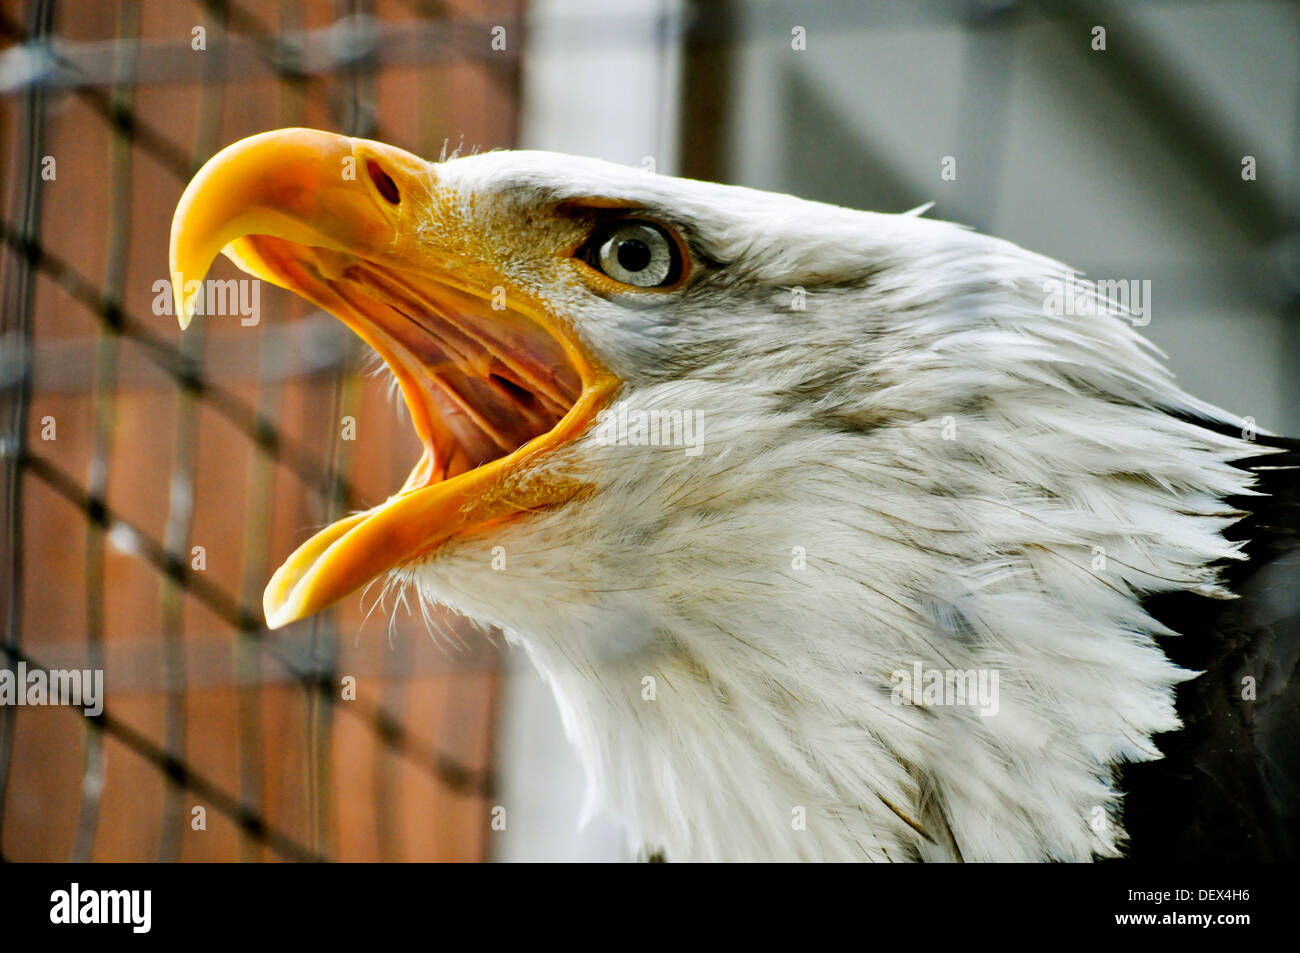 Rechinado eagle Foto de stock